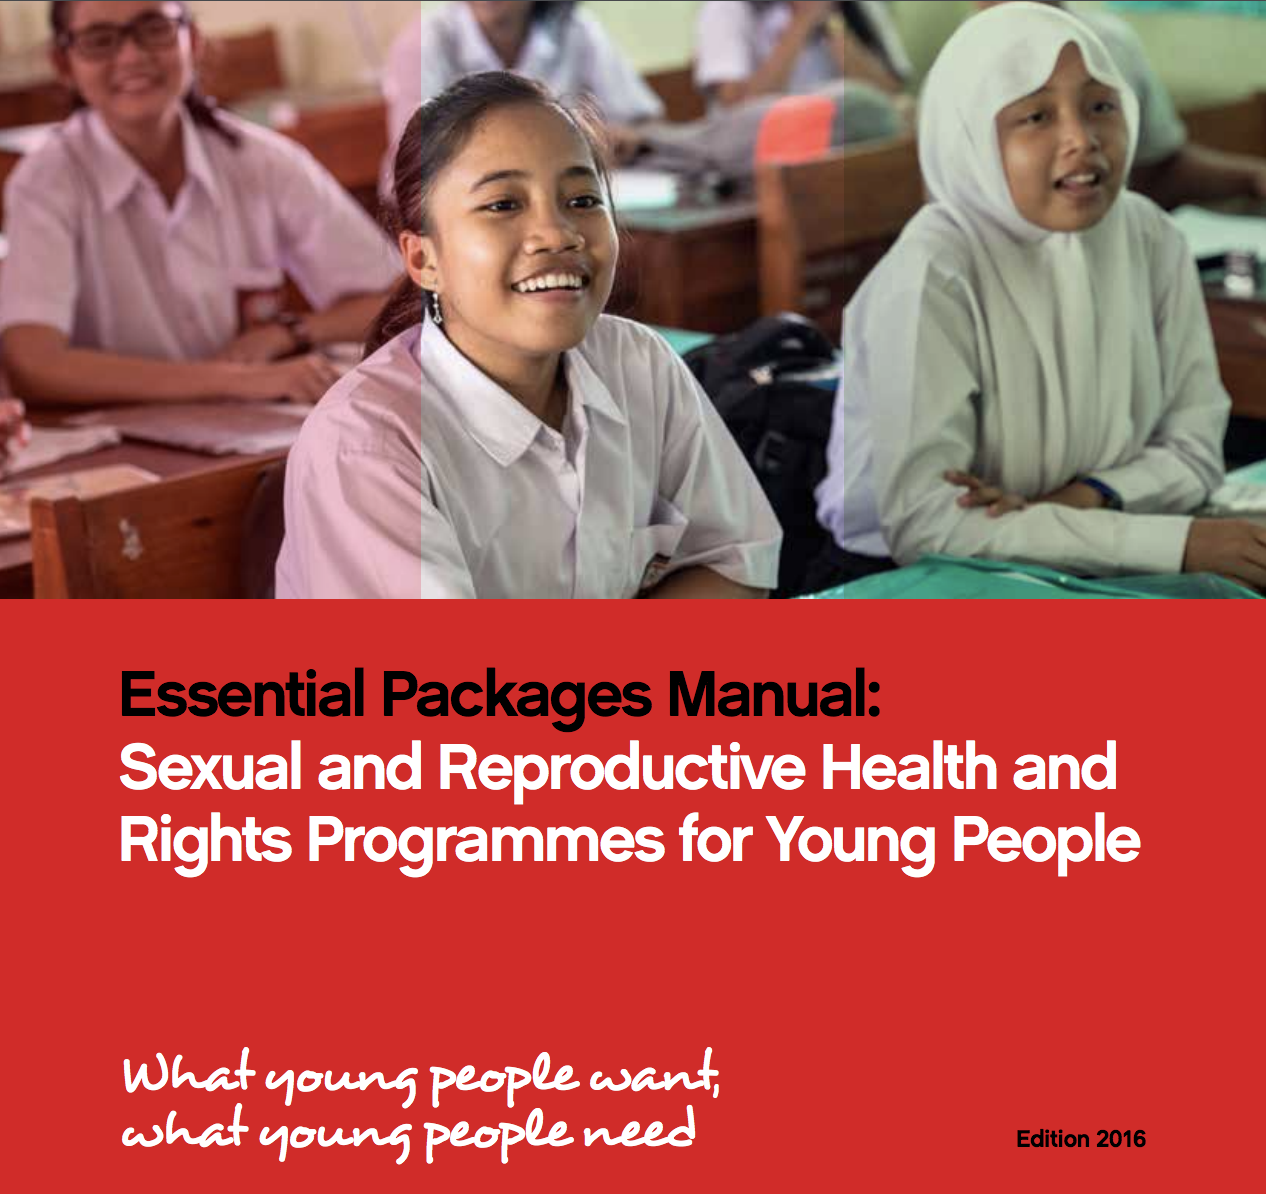 Manuel des paquets essentiels : Programmes de santé et de droits sexuels et reproductifs pour les jeunes